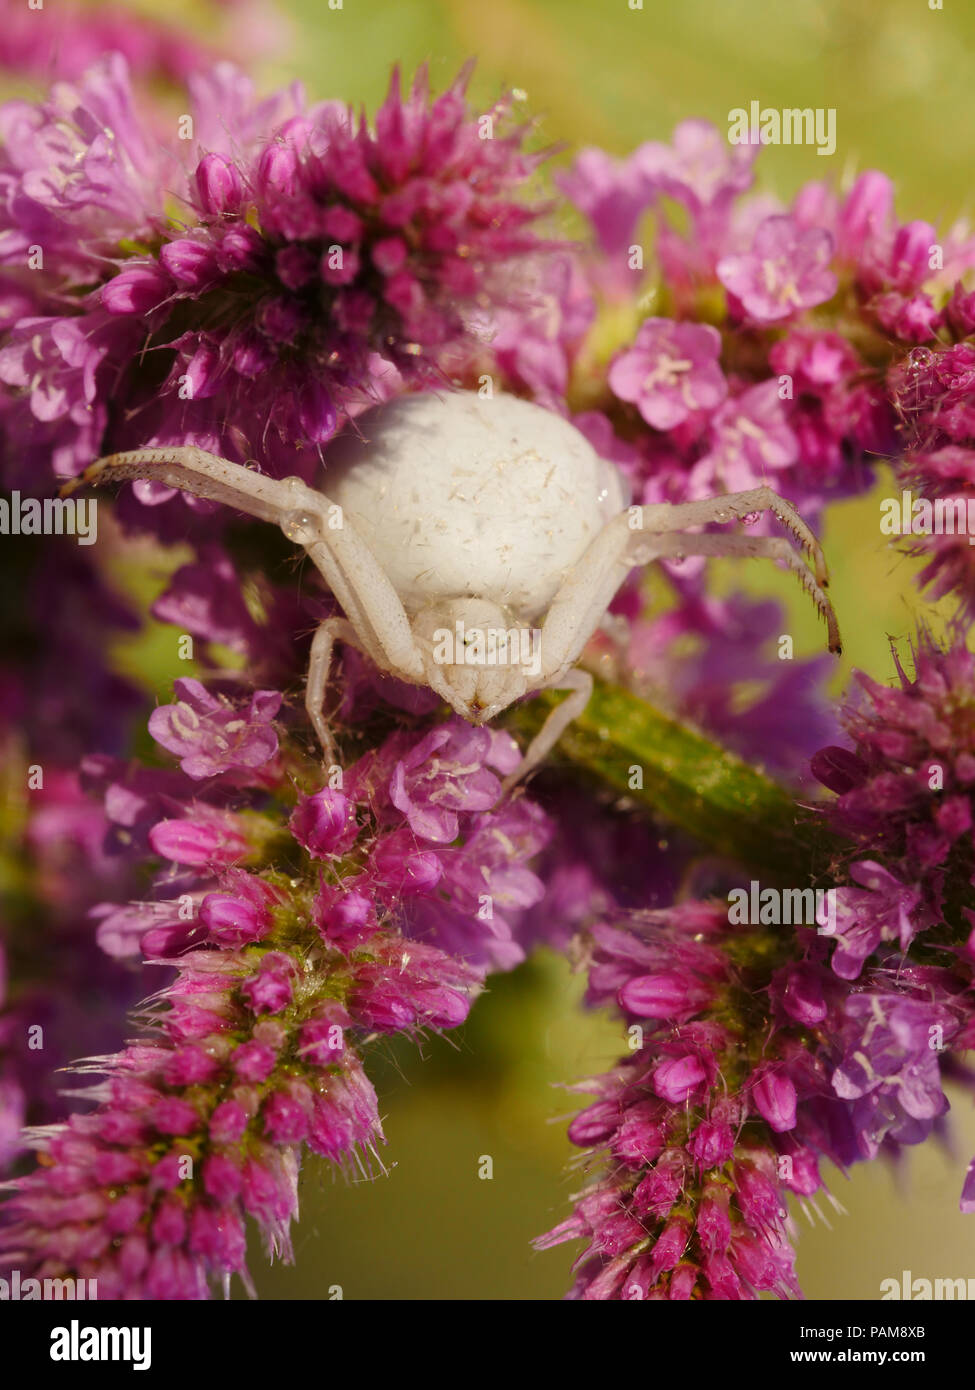 Misumena vatia araignée femelle araignée blanche qui rôdent sur fleur rose Banque D'Images